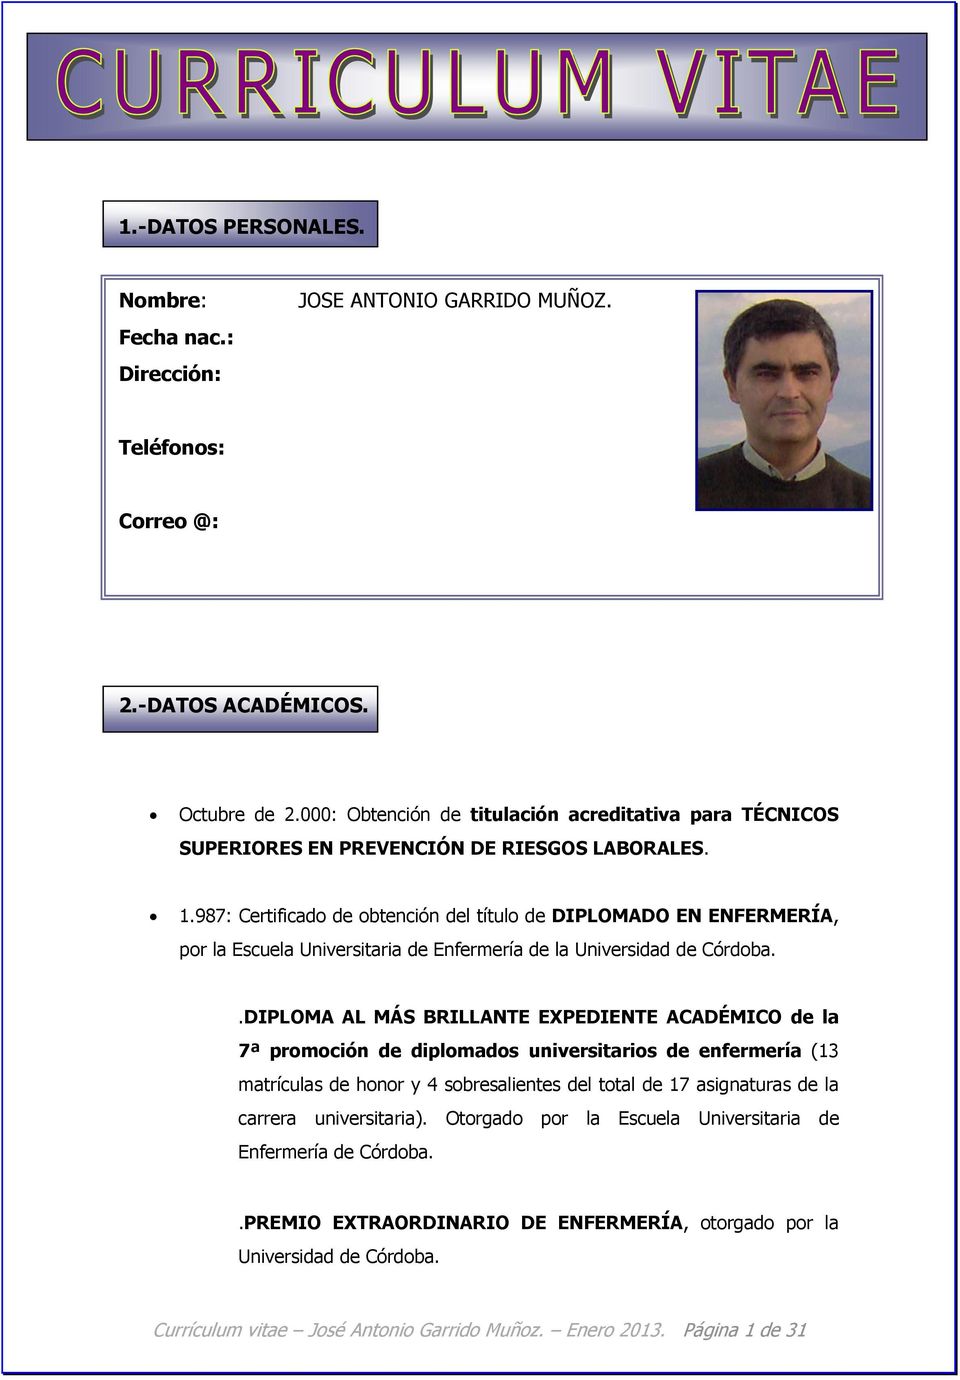 987: Certificado de obtención del título de DIPLOMADO EN ENFERMERÍA, por la Escuela Universitaria de Enfermería de la Universidad de Córdoba.